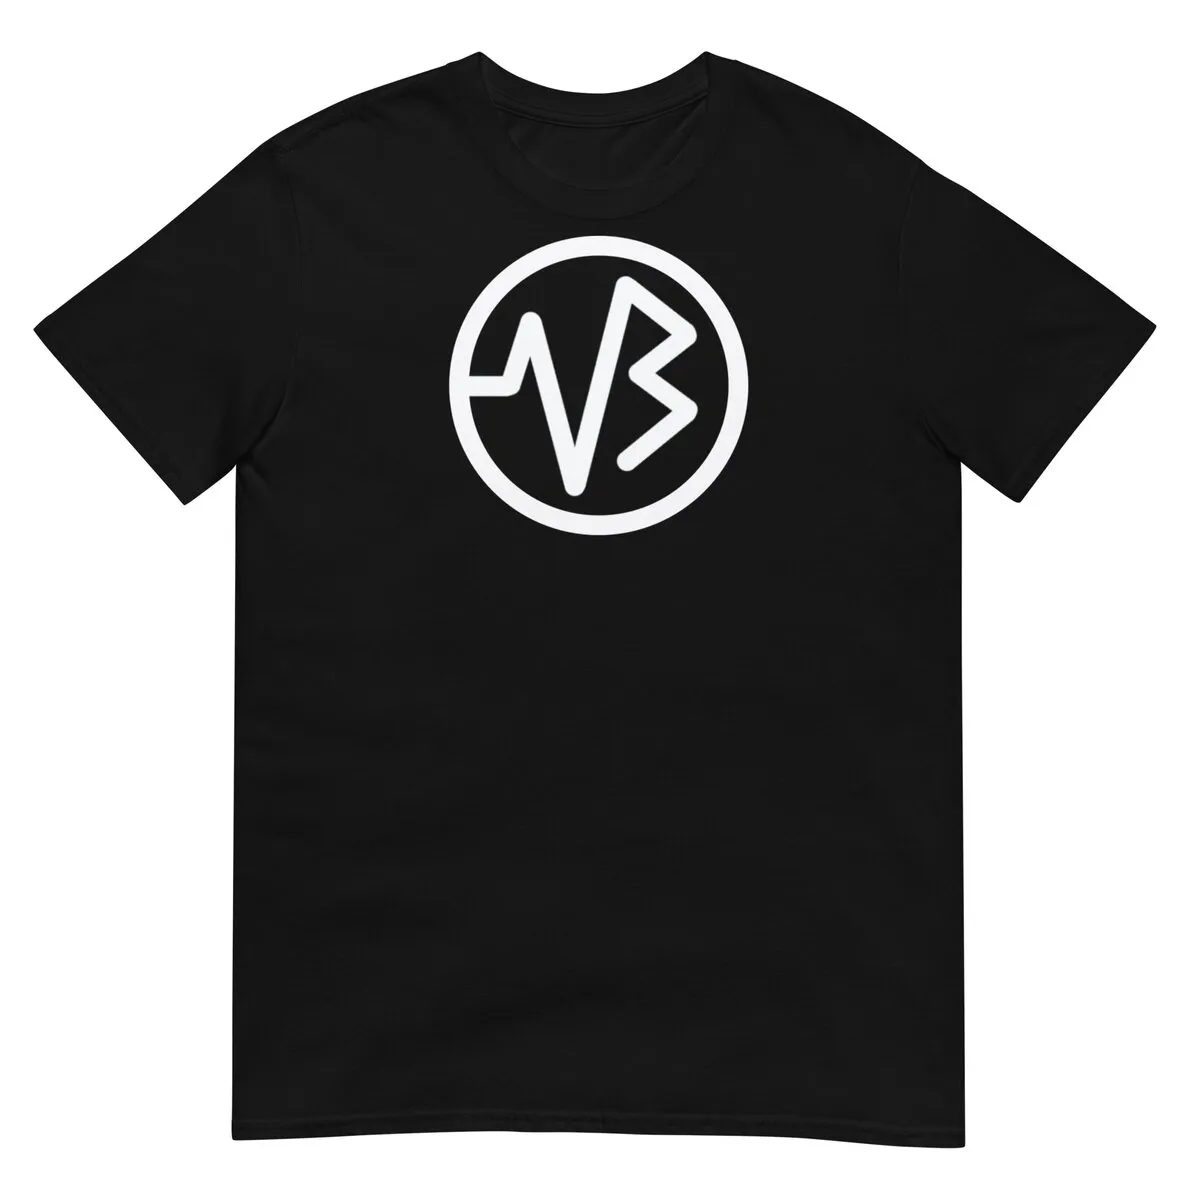 VB Monogram T- Shirt